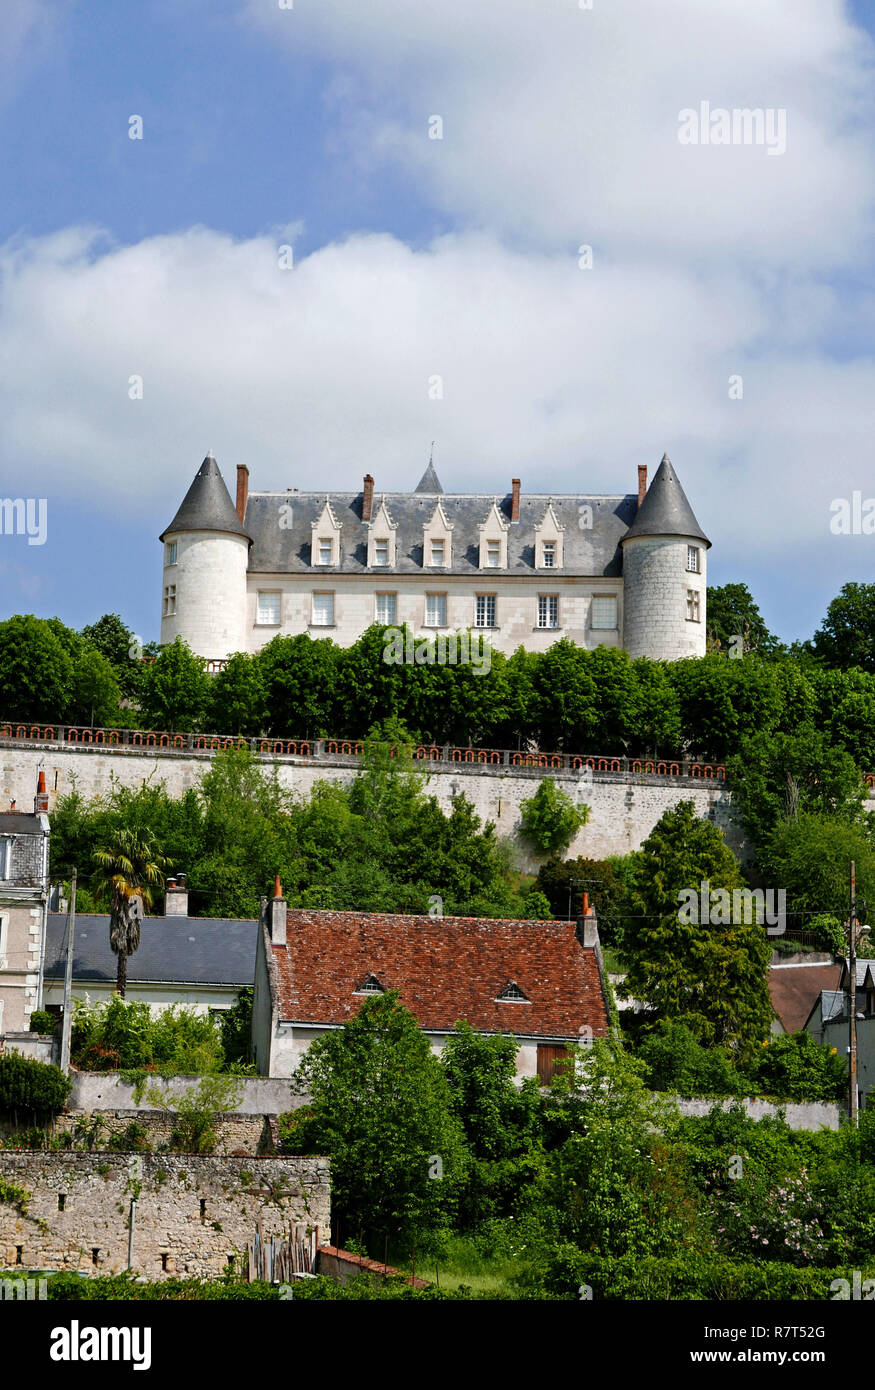 Château Moncontour, Les Vignobles Feray, Vouvray, Indre-et-Loire, Centre-Val de Loire, Pays de Loire, France Stock Photo